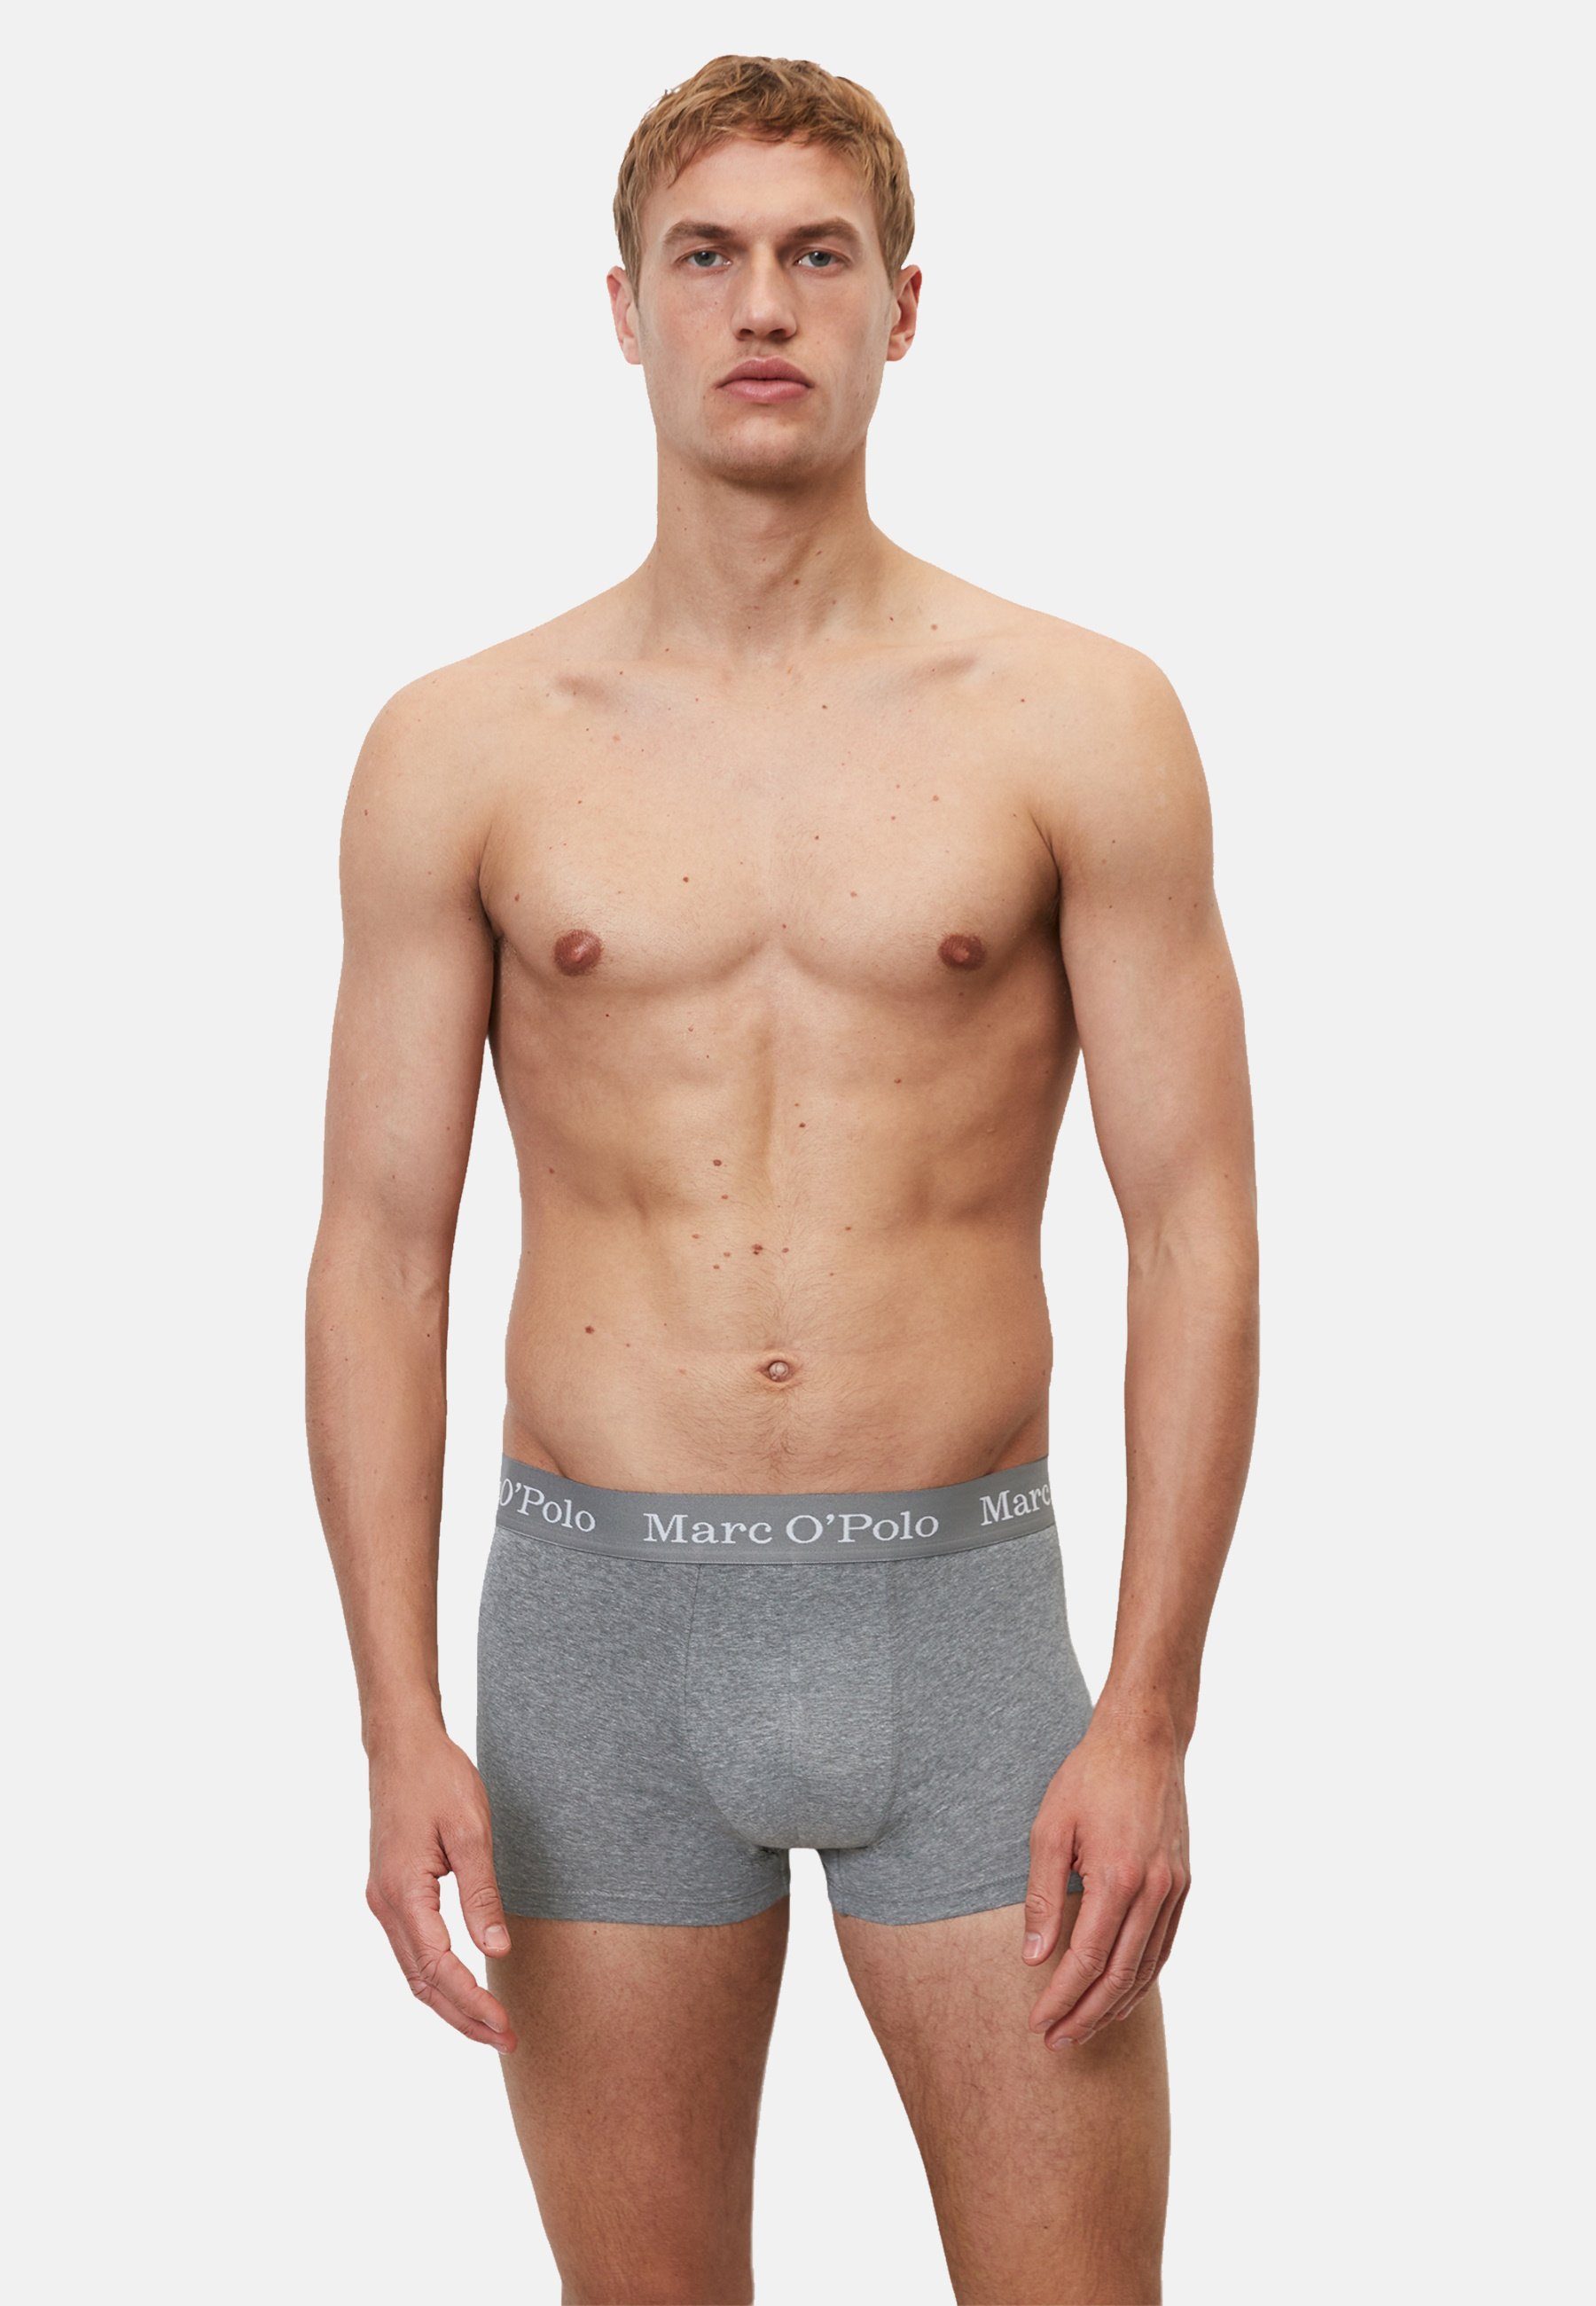 Melange Unterhosen Fünferpack (5-St) Marc Black/Beetle/Grey Basic Boxershorts O'Polo Boxershorts